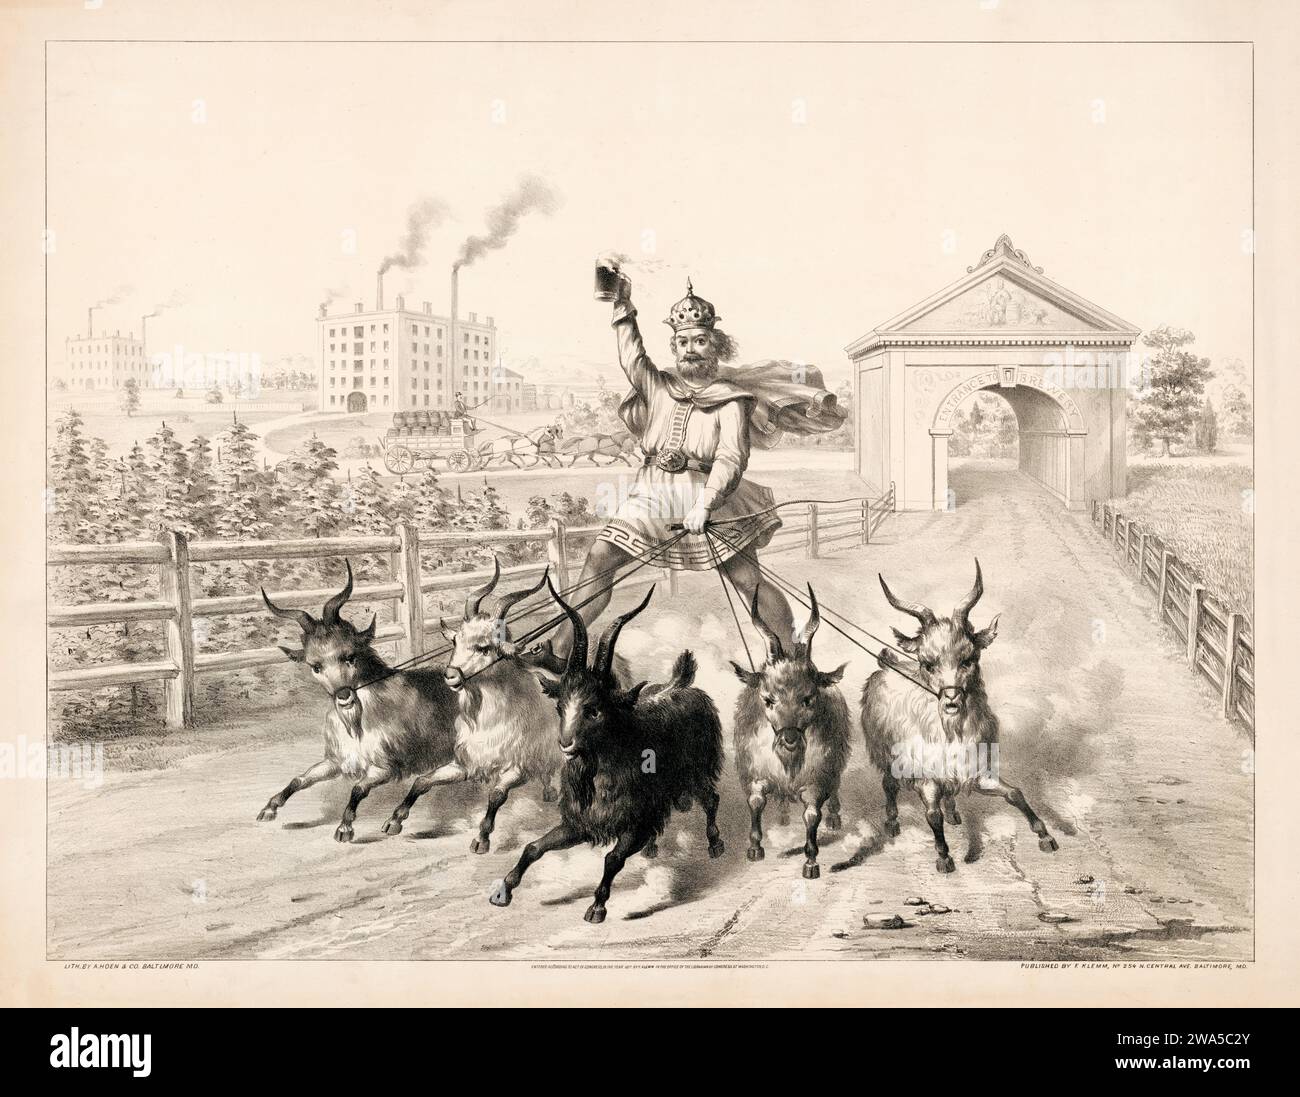 Gambrinus Reiten auf einer Ziegenherde, 1877 - Baltimore - Bierwerbung Poster, schwarz-weiß Zeichnung - Werbung für Bock Bier Stockfoto